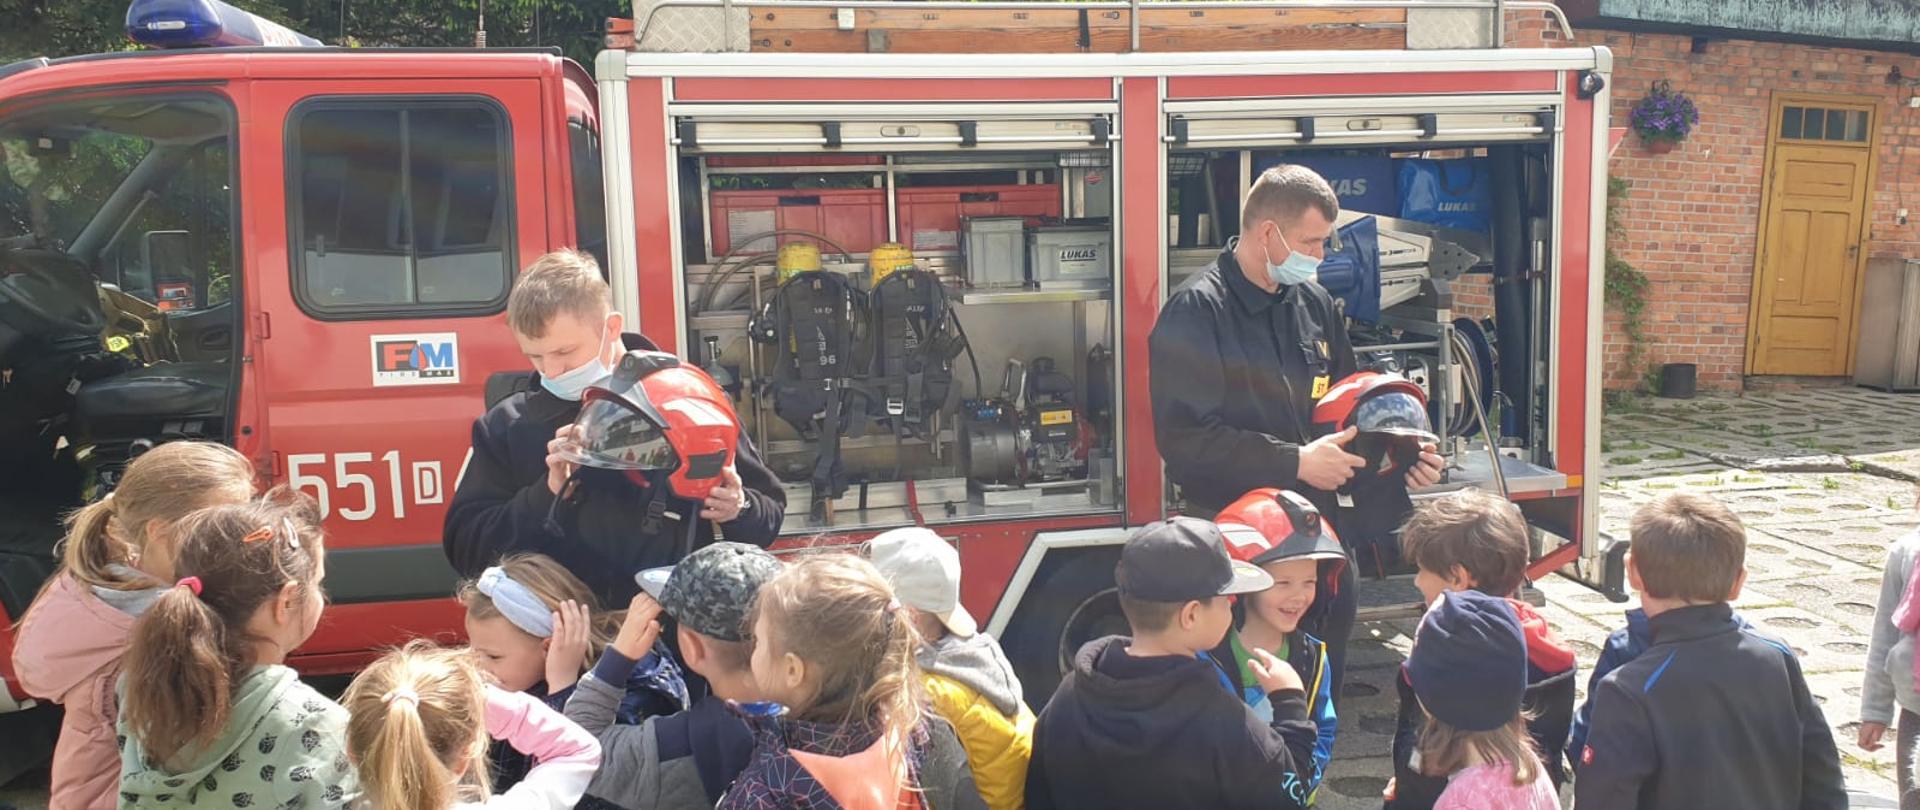 Na zdjęciu widać dwóch strażaków w maseczkach ochronnych oraz grupę przedszkolaków. W tle ustawiony jest samochód strażacki ze sprzętem ratowniczym. Strażacy zakładają dzieciom hełmy.